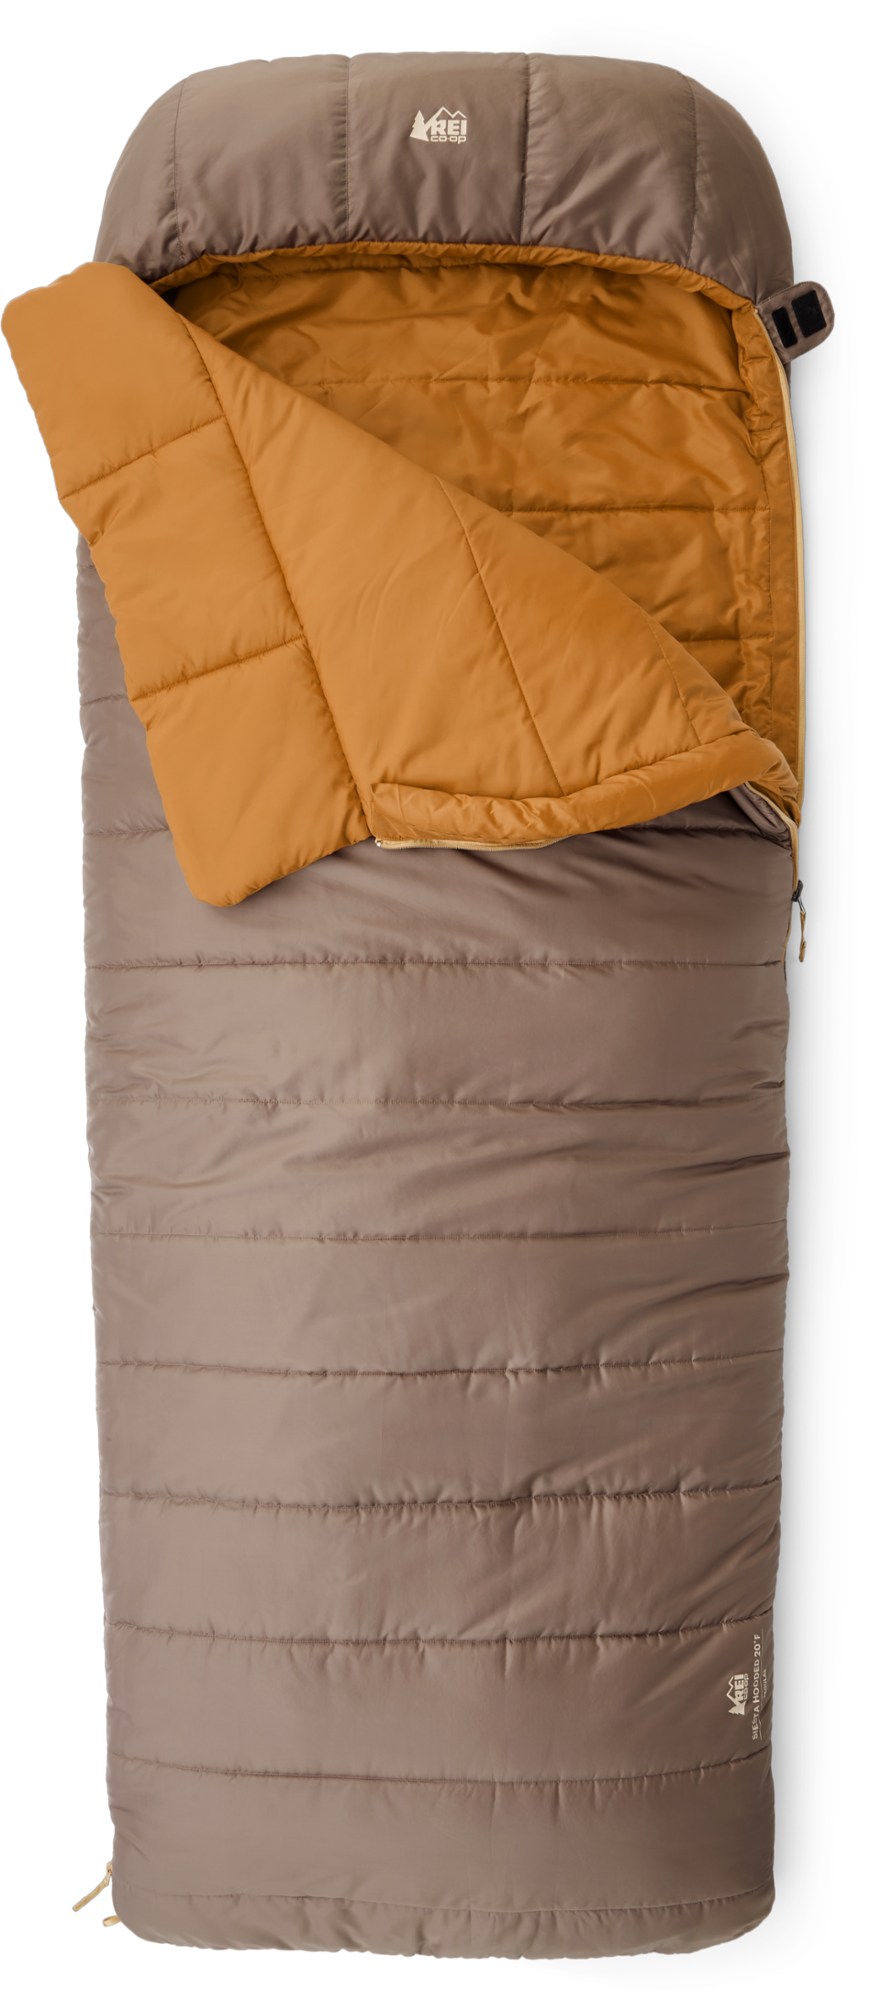 Camping gear (REI Co-op Siesta Hooded 20 sleeping bag)